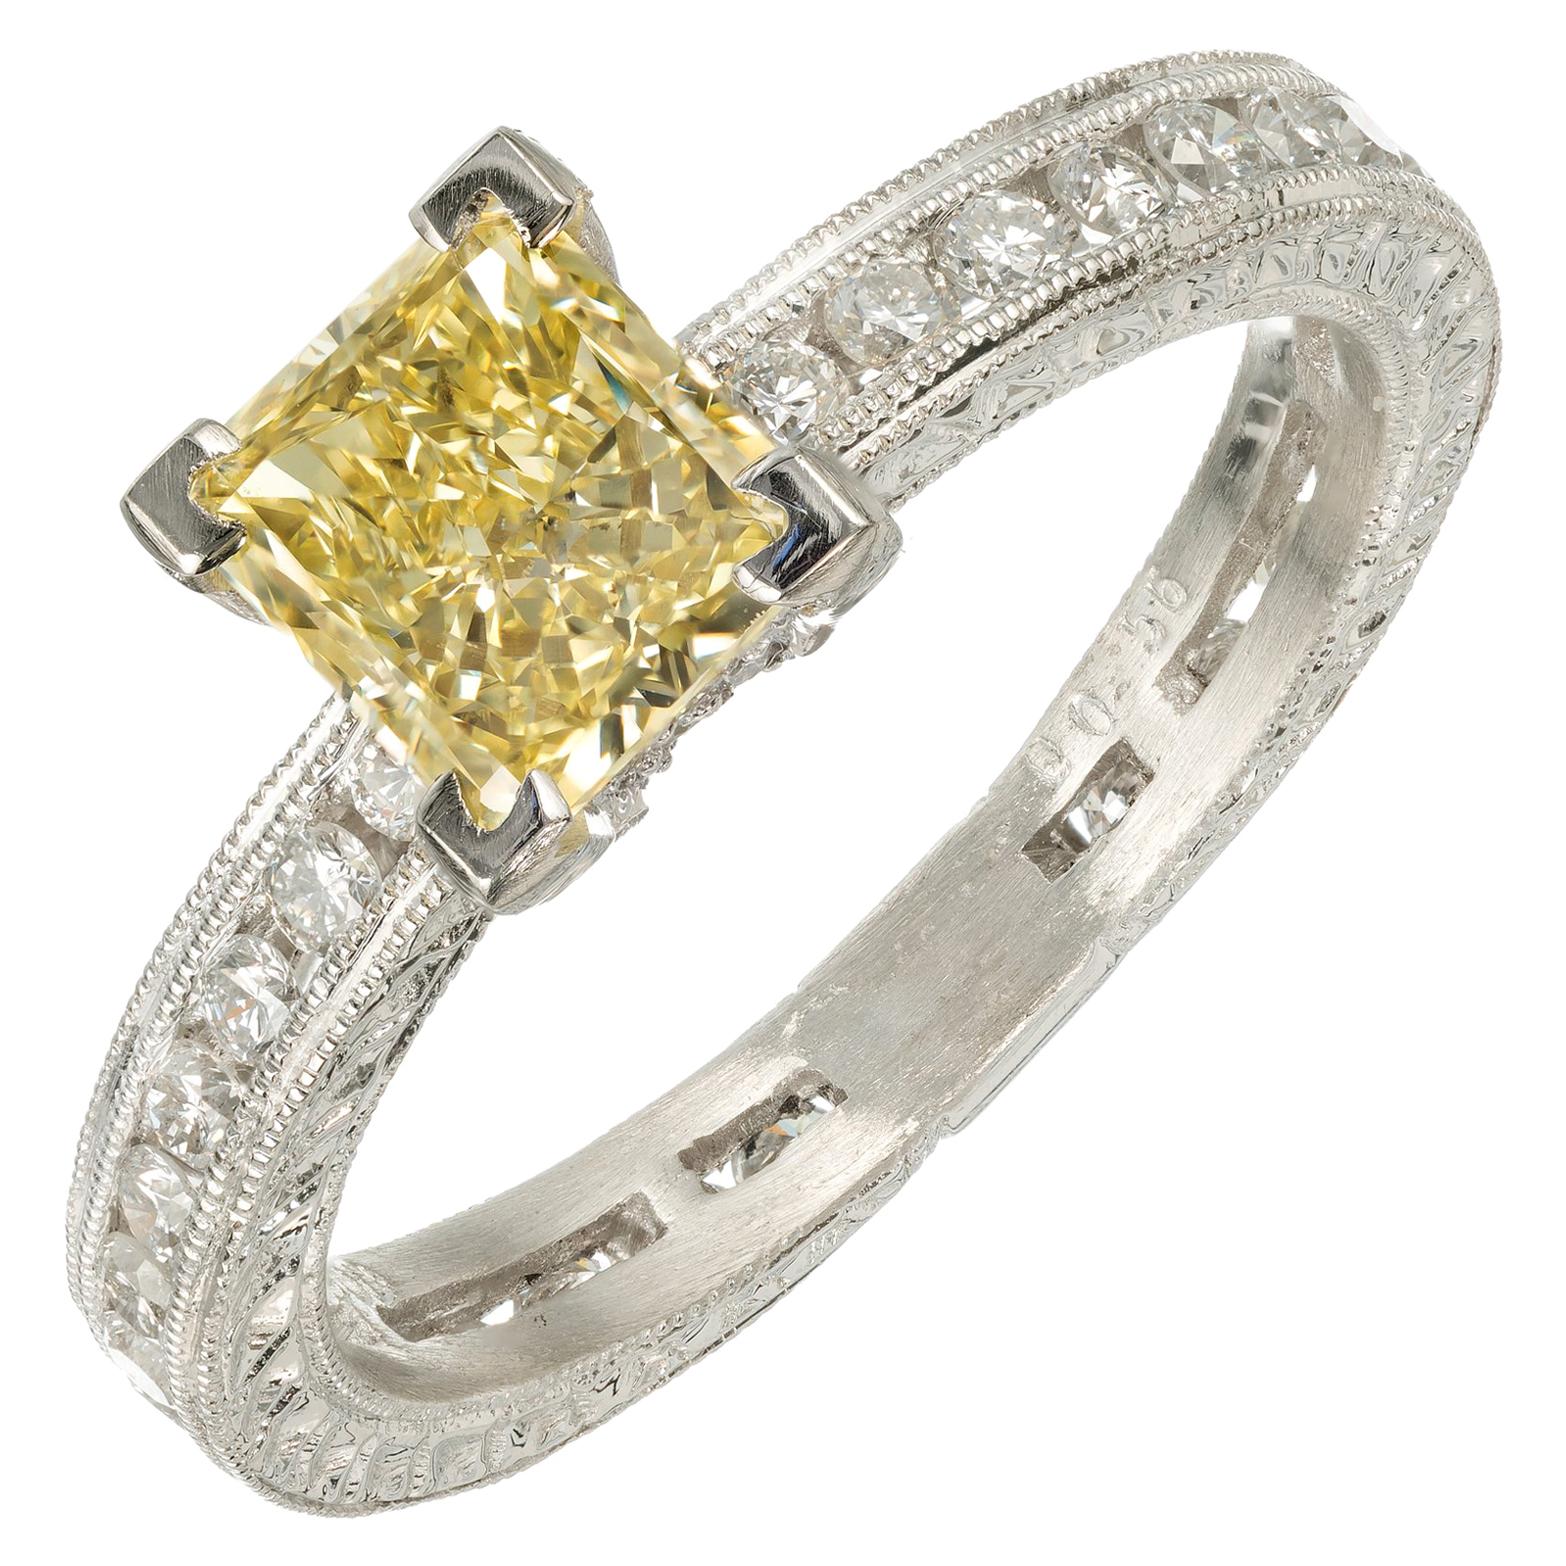 Verlobungsring, GIA-zertifizierter 1,04 Karat gelber Diamant in Platin von Peter Suchy